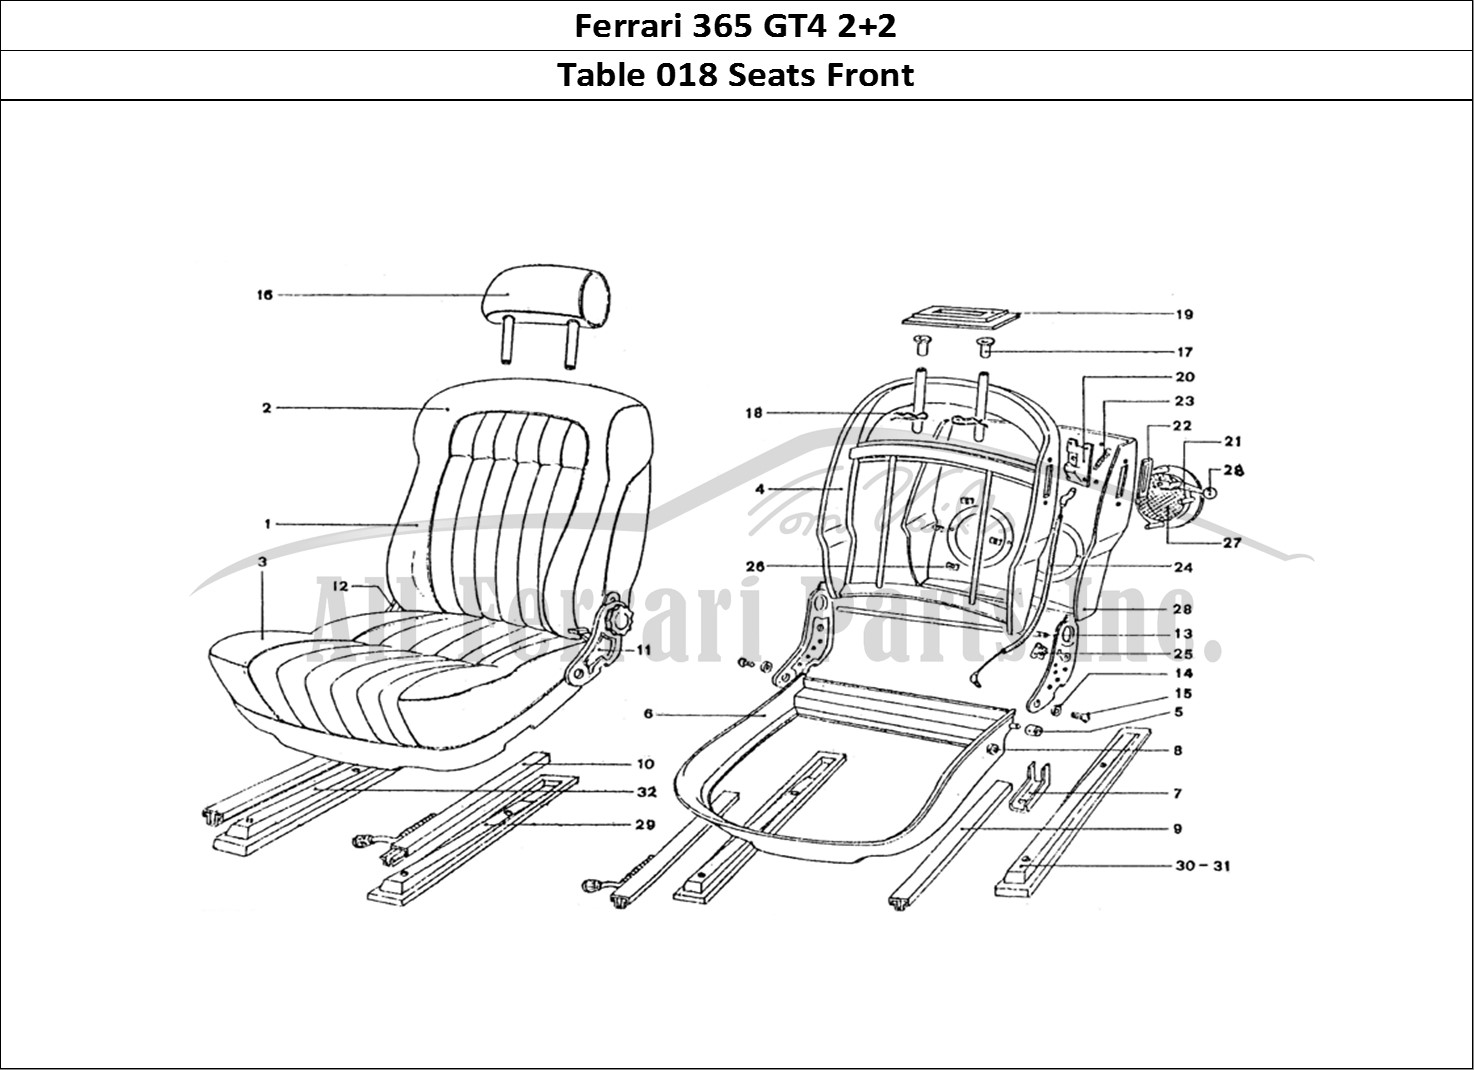 Ferrari Parts Ferrari 365 GT4 2+2 Coachwork Page 018 Front Seats